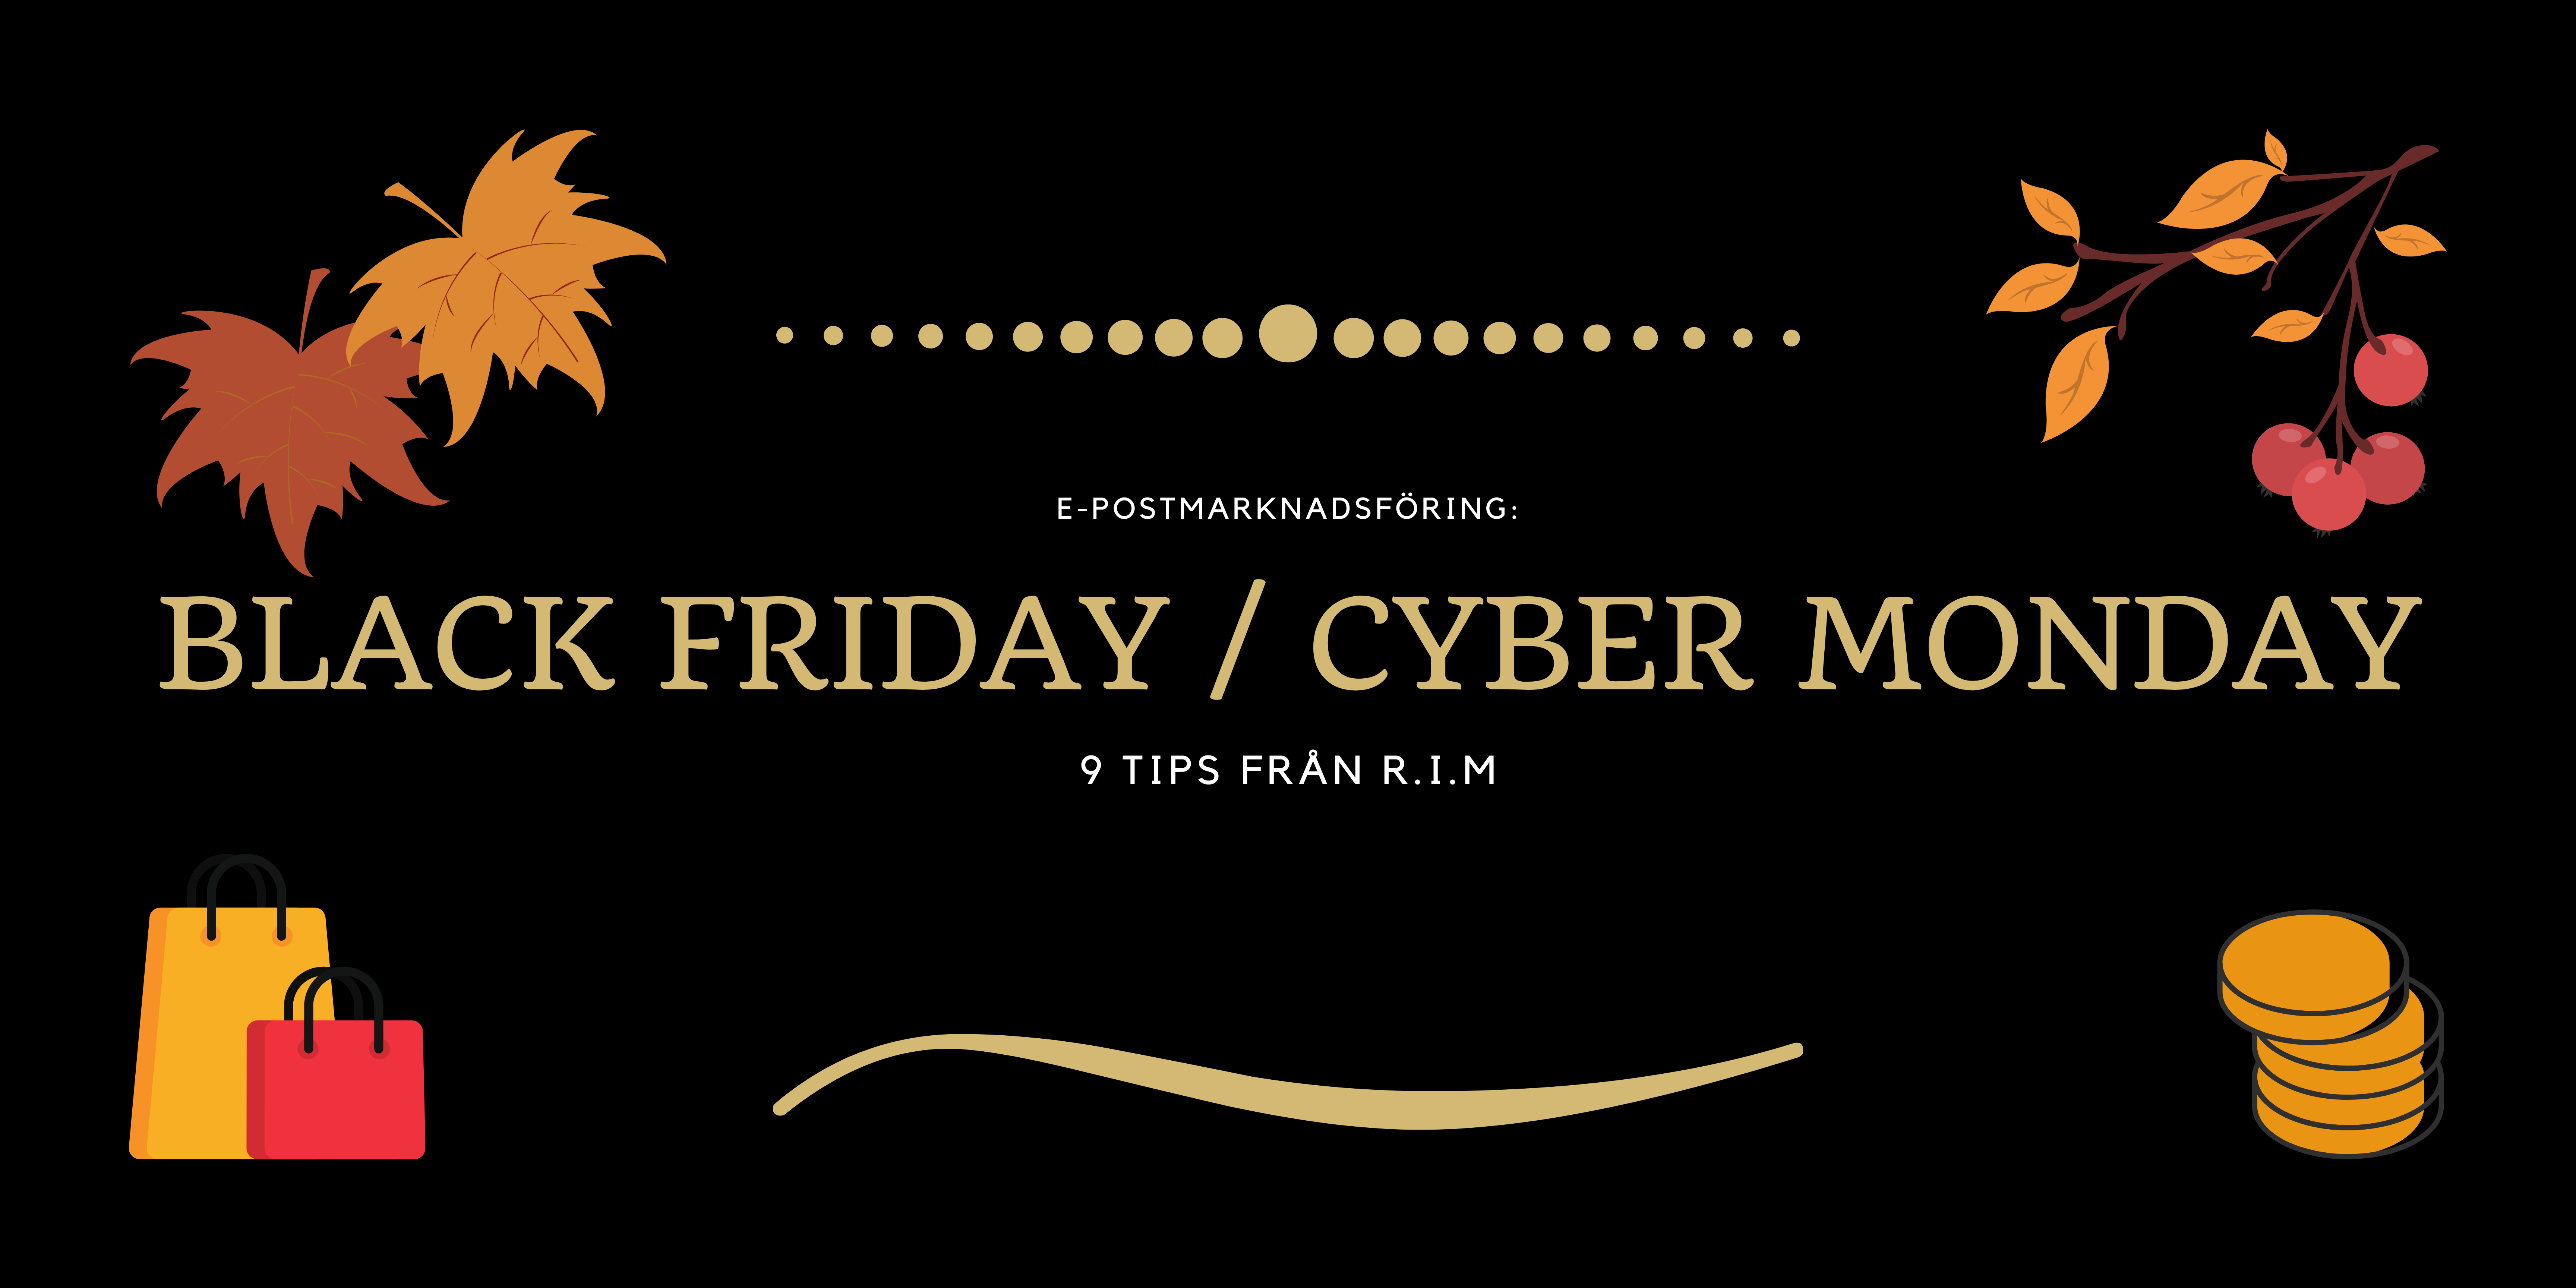 9 tips för Black Friday / Cyber Monday e-postmarknadsföring